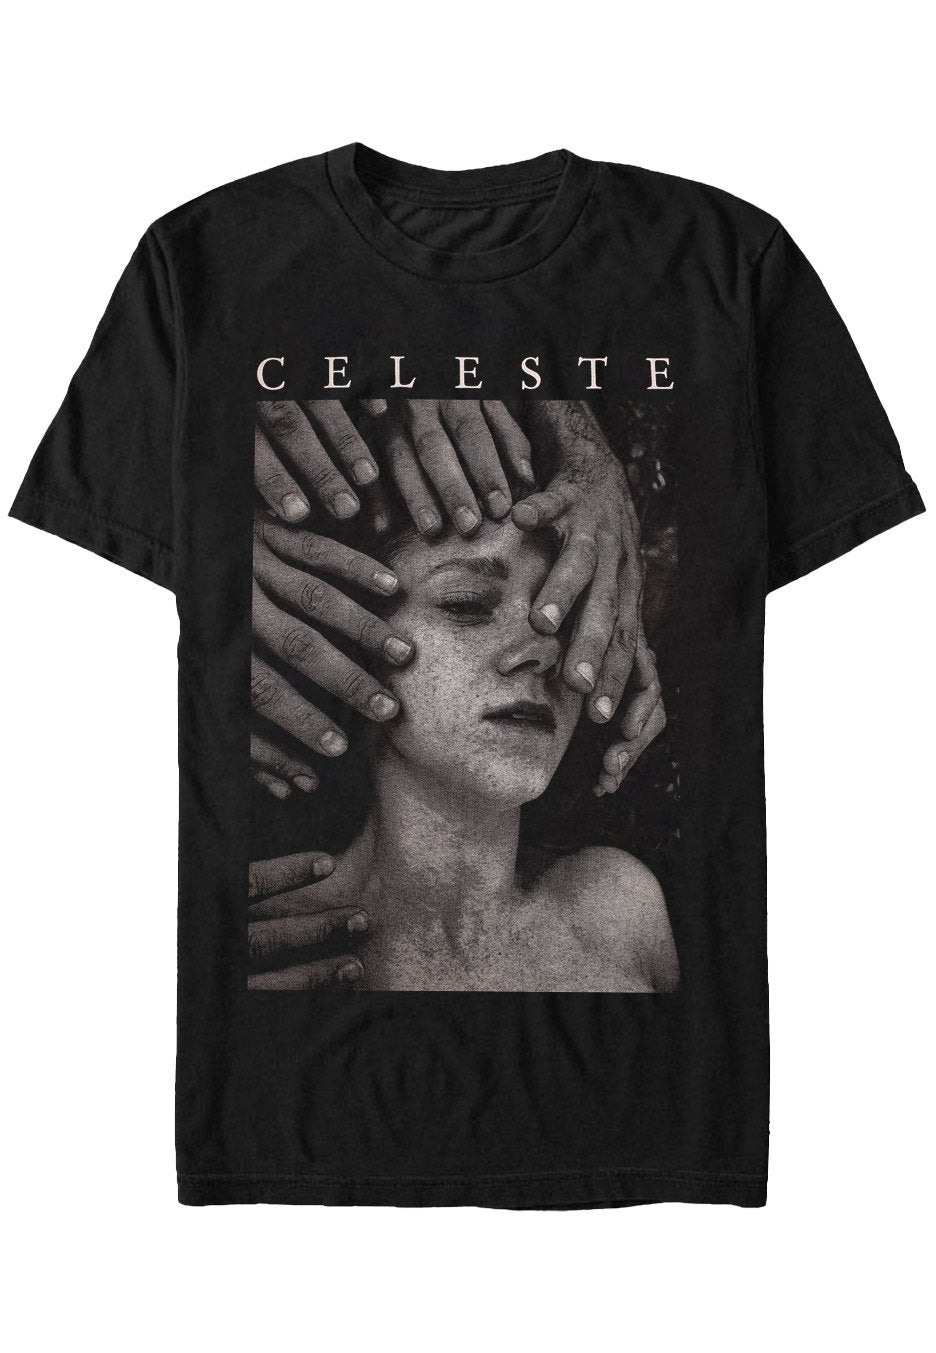 Celeste - Assassine(S) - T-Shirt